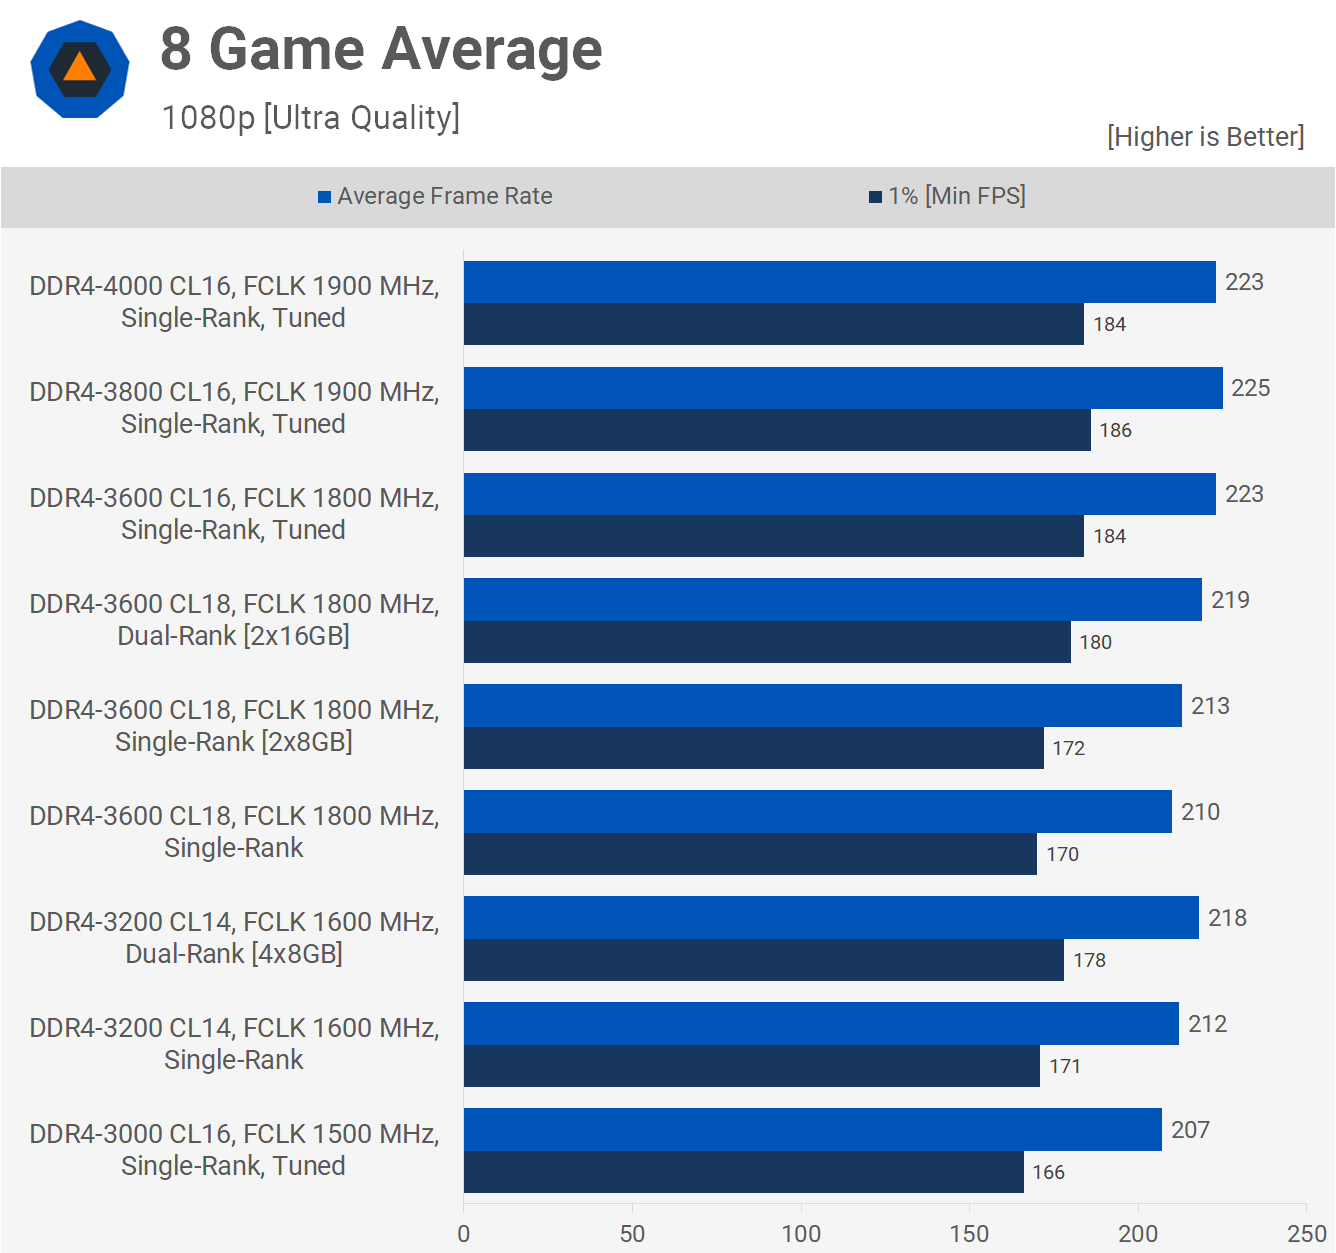 8 Game Average